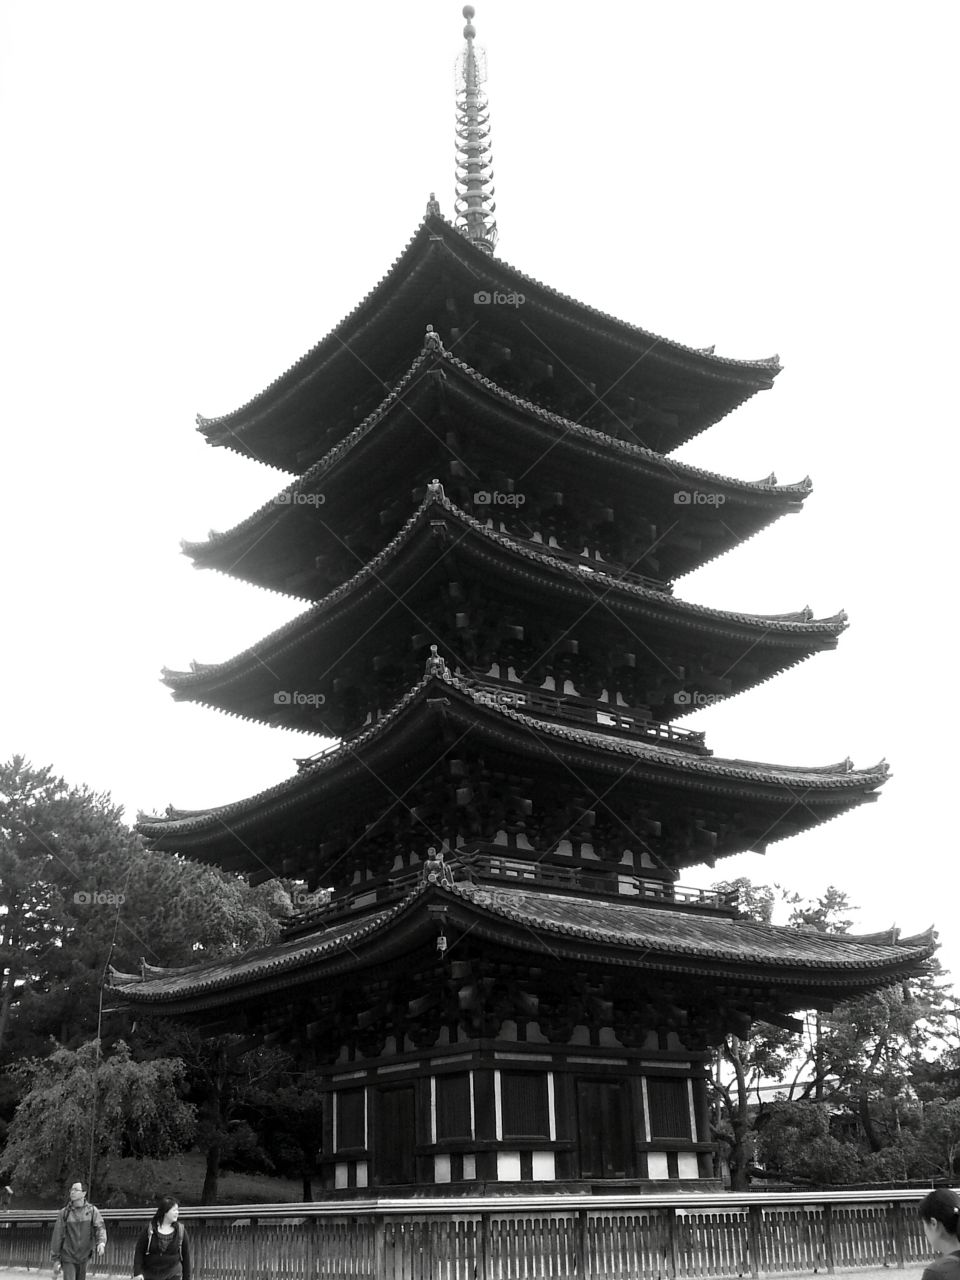 5-Storey Pagoda in Nara, Japan